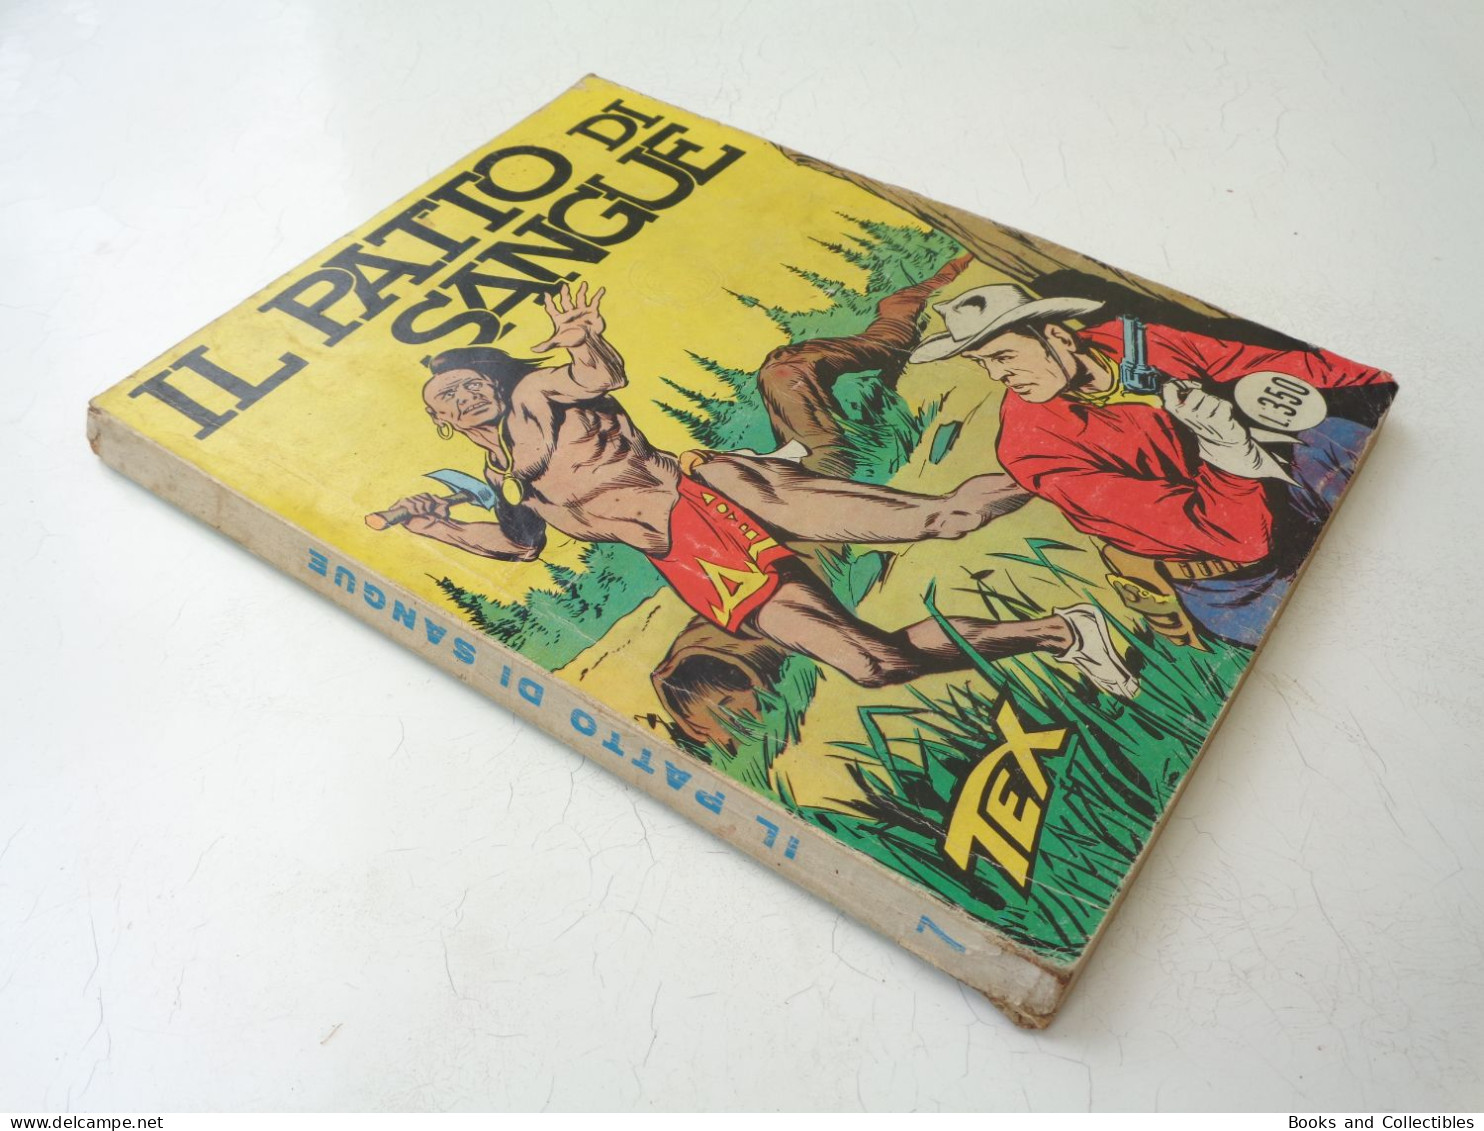 TEX GIGANTE N. 7 - IL PATTO DI SANGUE - Edizioni Araldo, Settembre 1964 - Lire 350 - Tex